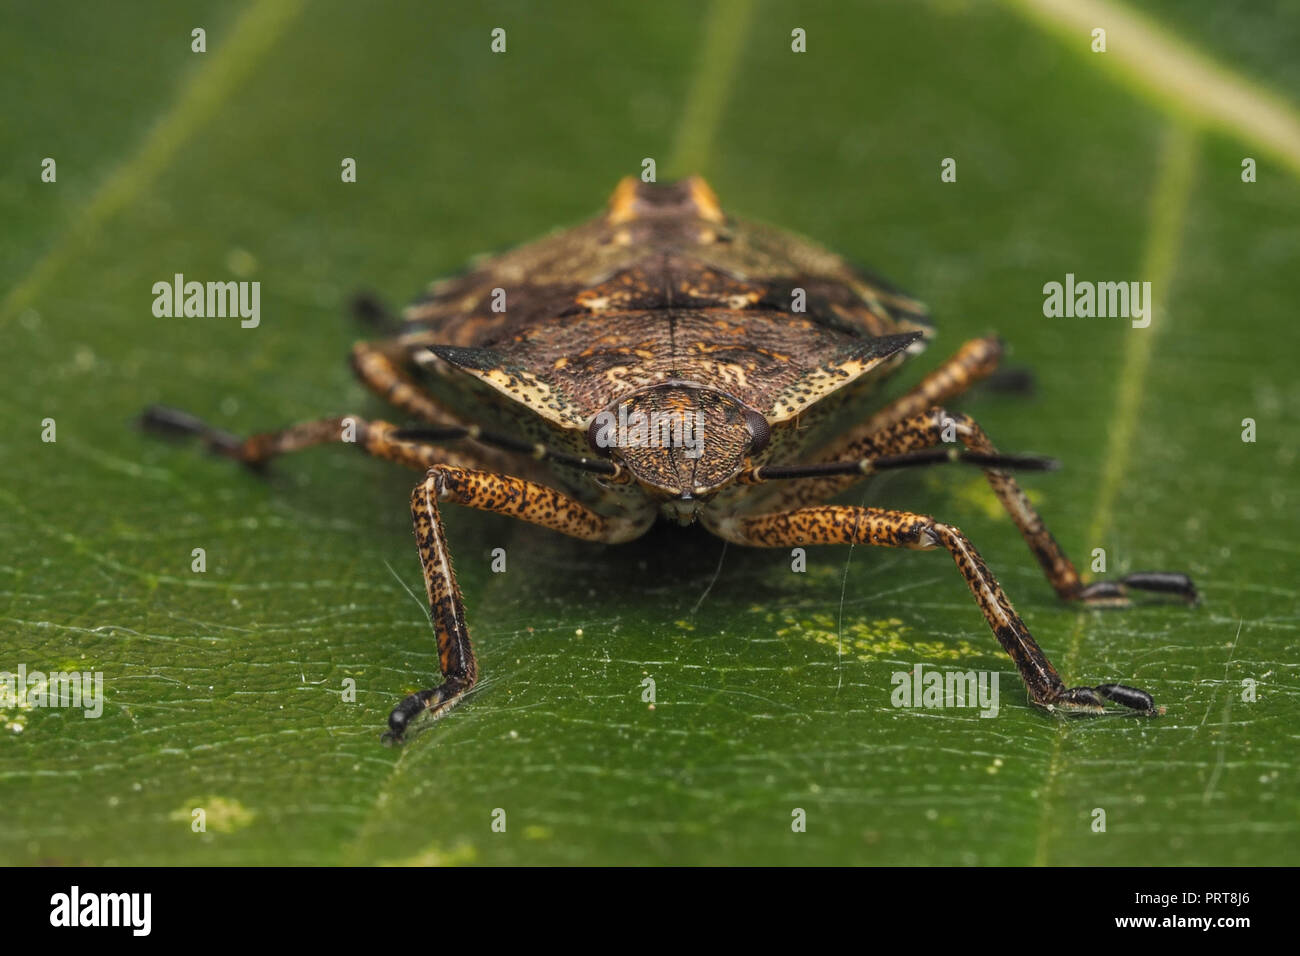 Frontalansicht des Waldes Shieldbug endgültige instar Nymphe auf Eichenlaub. Tipperary, Irland Stockfoto